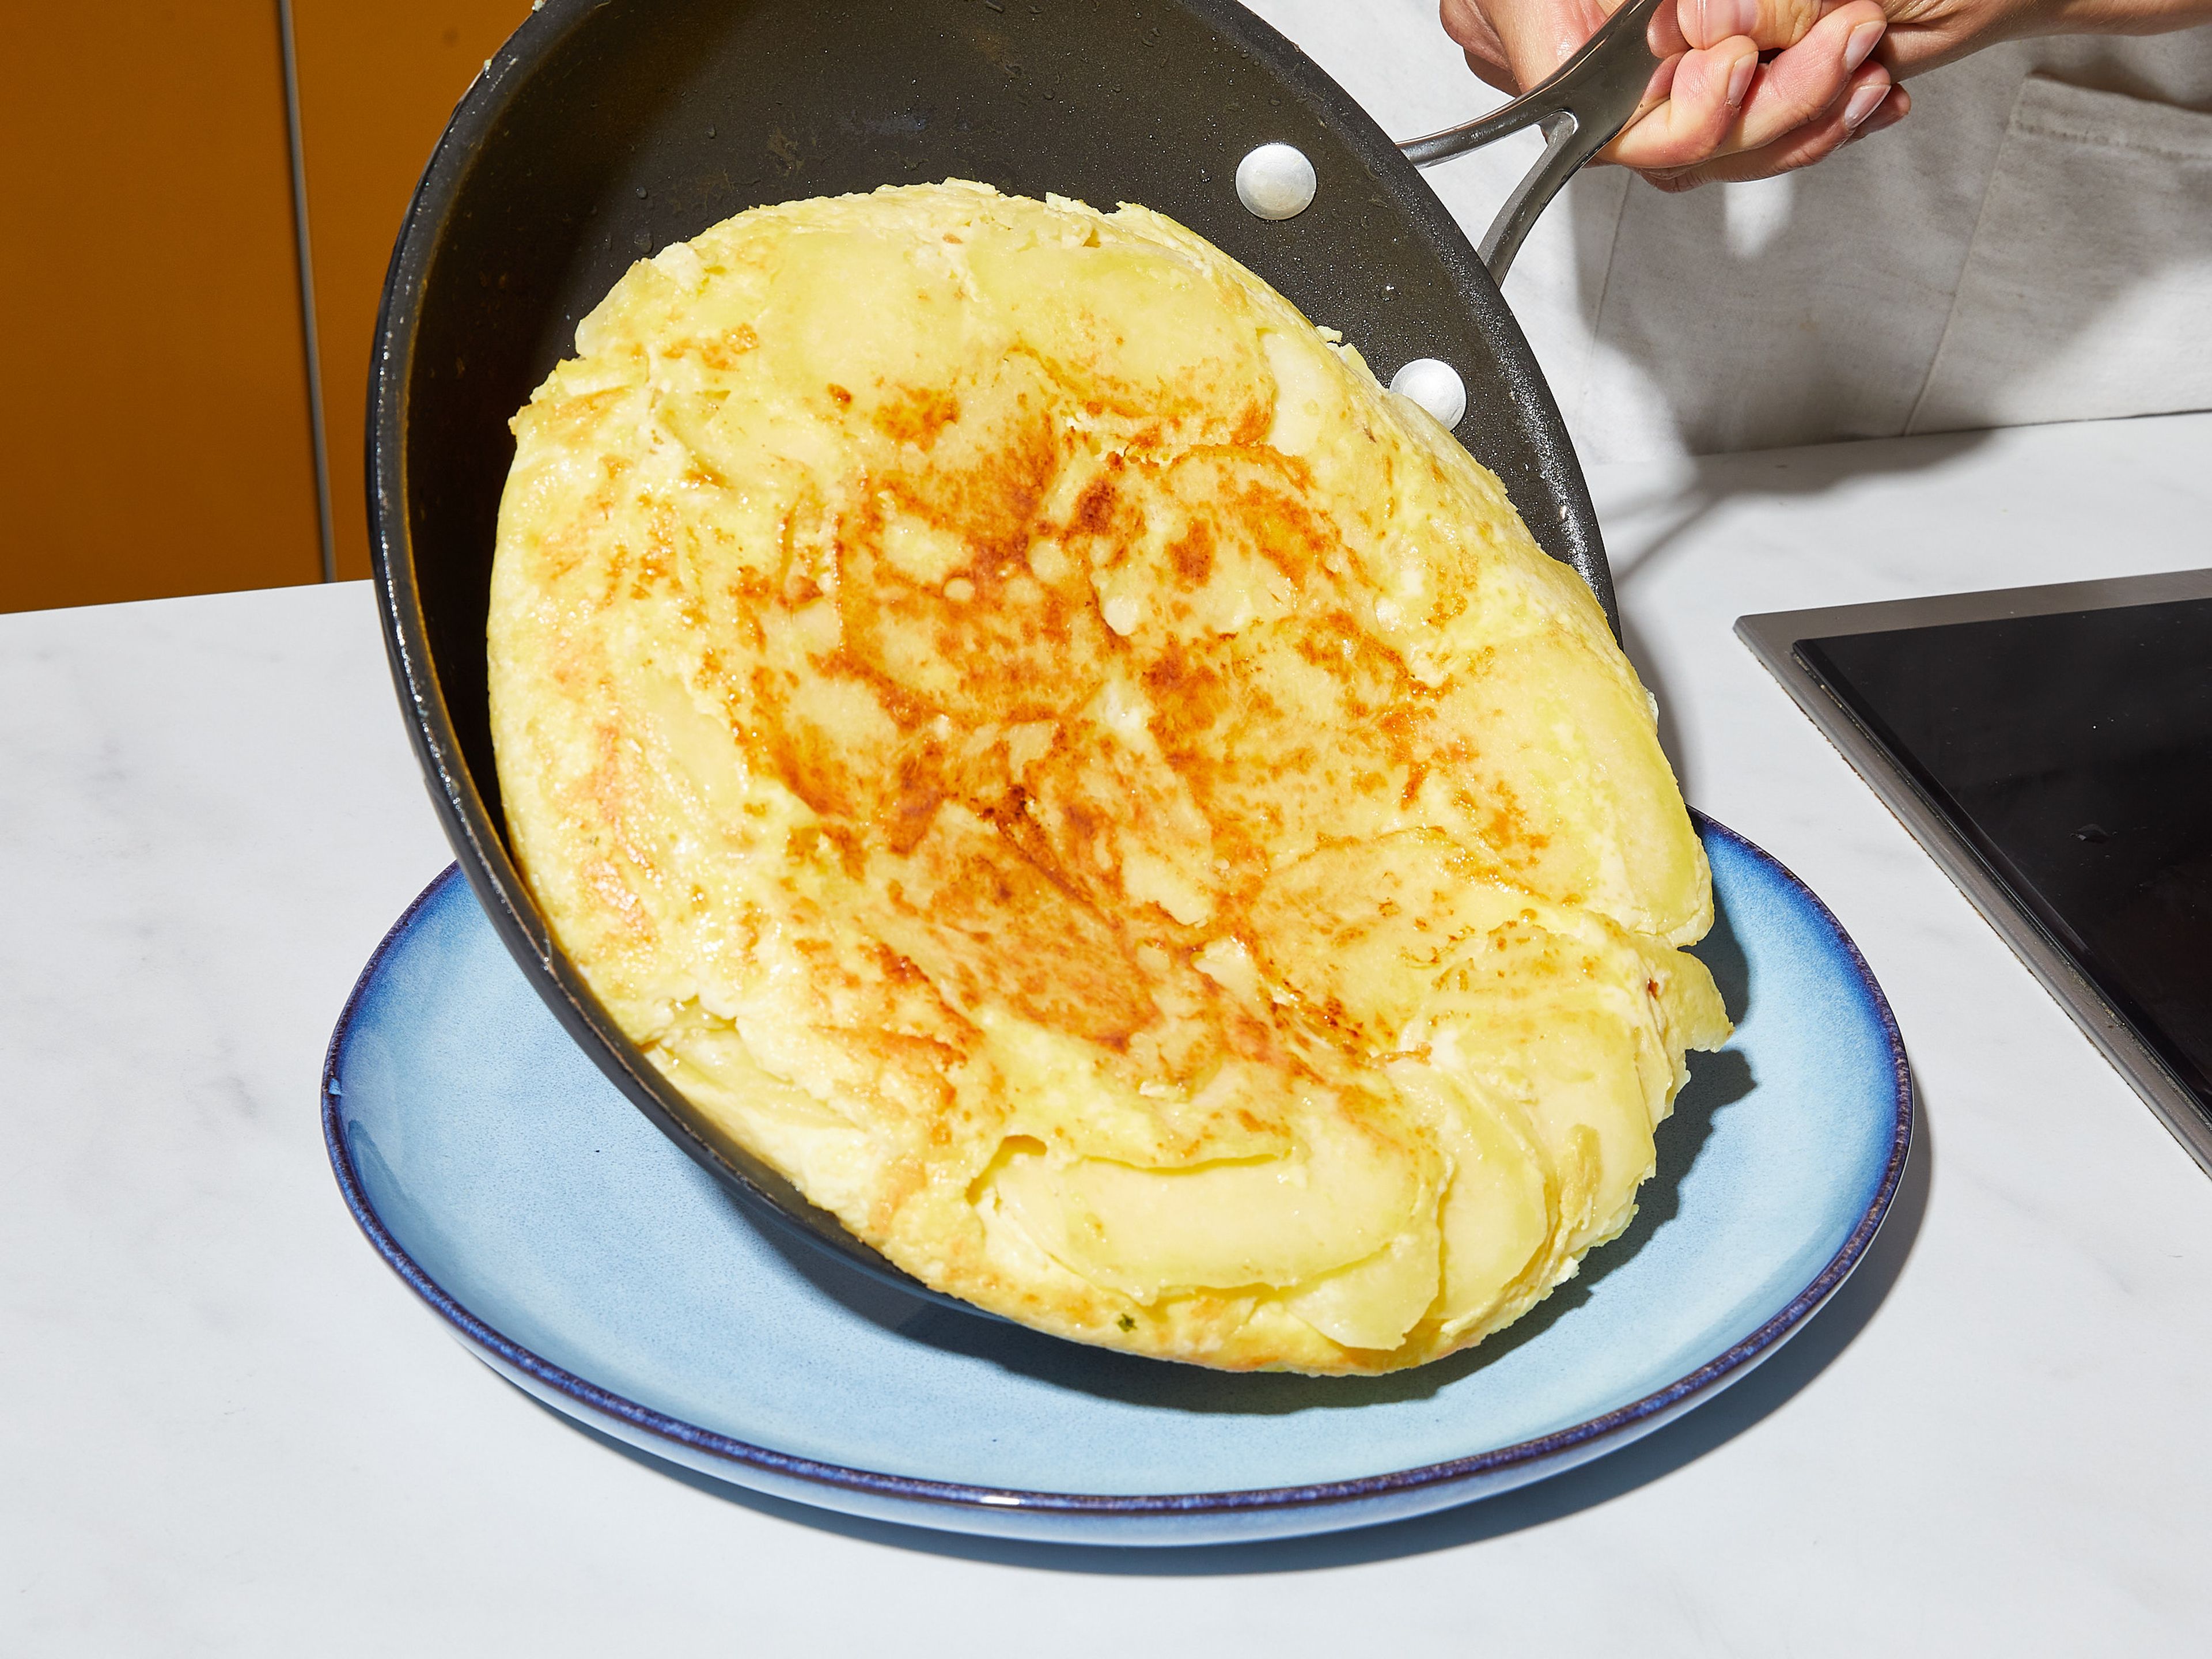 Dieselbe Pfanne auf mittlerer Stufe erhitzen und 3 EL Öl, sowie die Ei-Kartoffel-Mischung hineingeben. Glattstreichen und in der Pfanne ca. 15 – 20 Min. stocken lassen, bis die Eier fast fest sind, die Oberfläche aber noch leicht flüssig ist. Die Tortilla mit Hilfe eines großen Tellers vorsichtig stürzen und mit der gebräunten Seite nach oben zurück in die Pfanne gleiten lassen. Weitere 5 Min. braten, dann auf einen großen Teller gleiten lassen. Wie einen Kuchen aufschneiden und servieren. Guten Appetit!